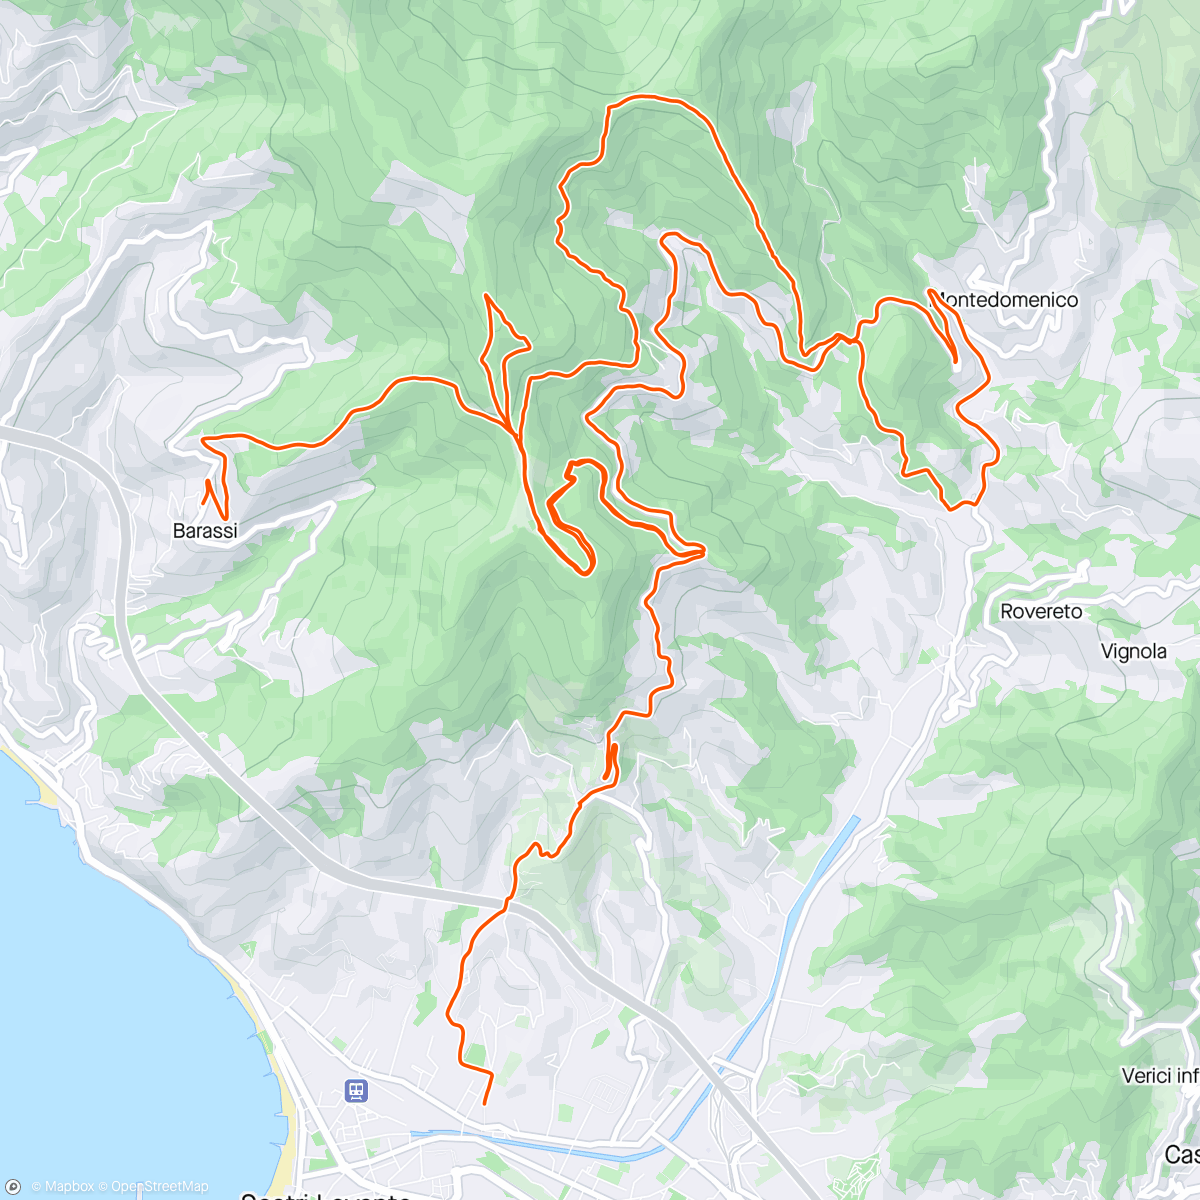 Map of the activity, Sestri e dintorni più pranzo 😁🙂